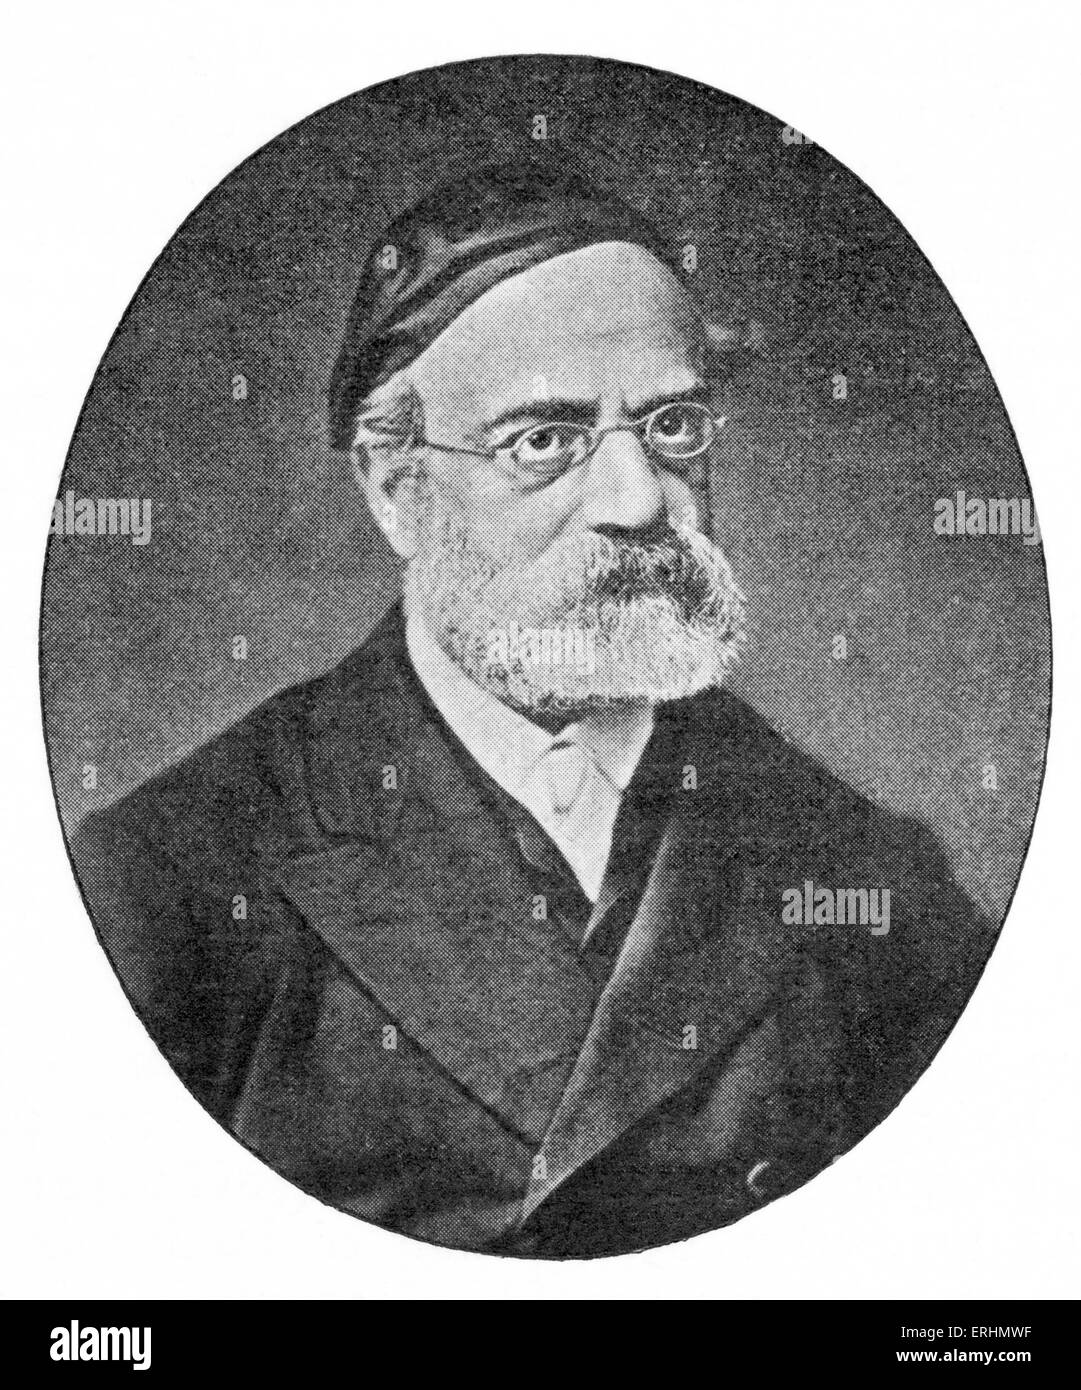 Rabbi Samson Raphael Hirsch - intellectual founder of the Torah im Derech Eretz. 20 June 1808 - 31 December 1888. Stock Photo